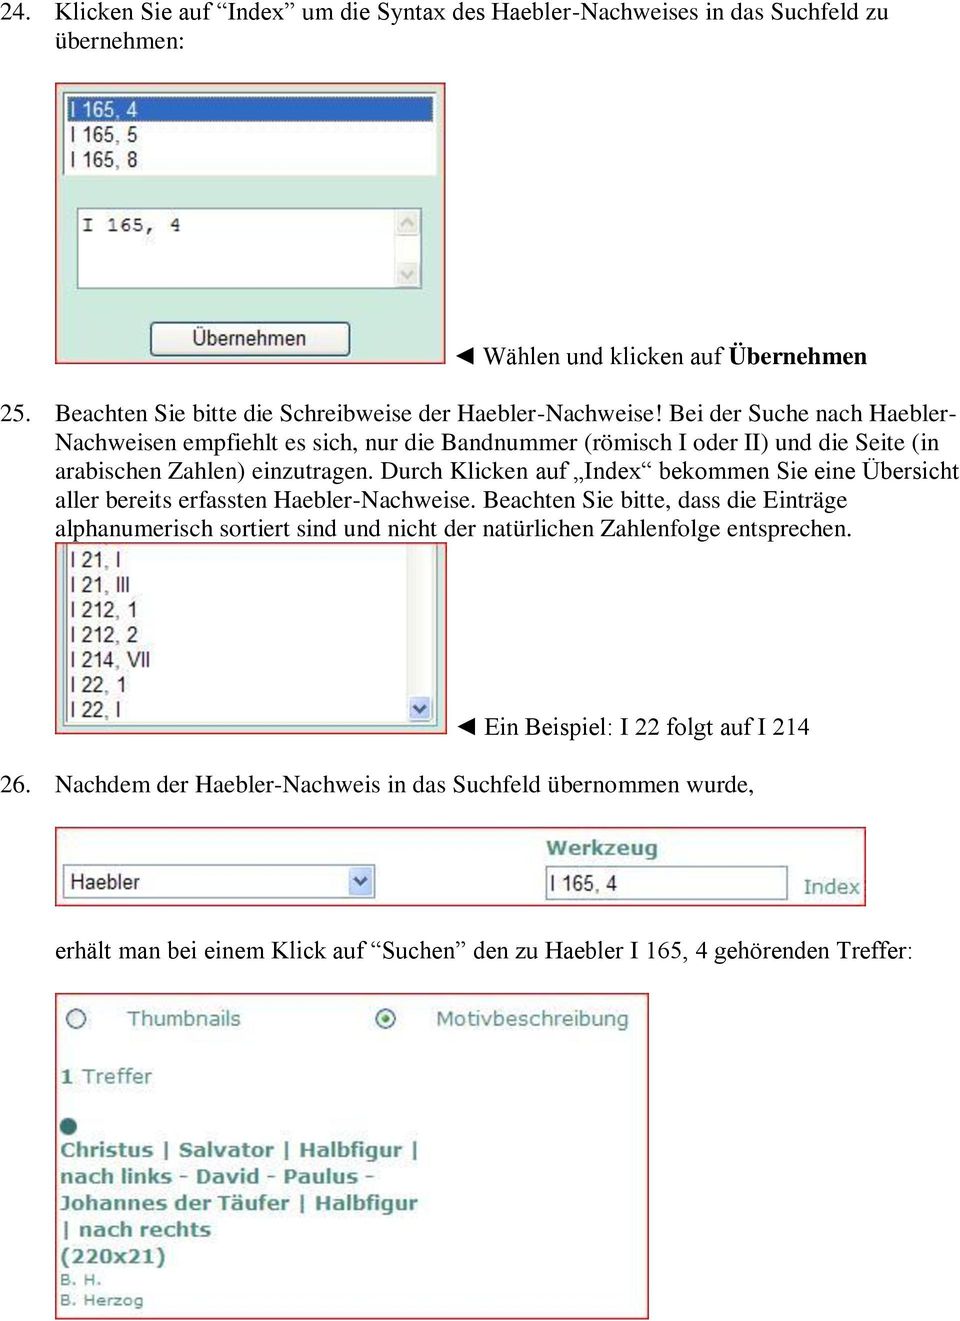 Bei der Suche nach Haebler- Nachweisen empfiehlt es sich, nur die Bandnummer (römisch I oder II) und die Seite (in arabischen Zahlen) einzutragen.